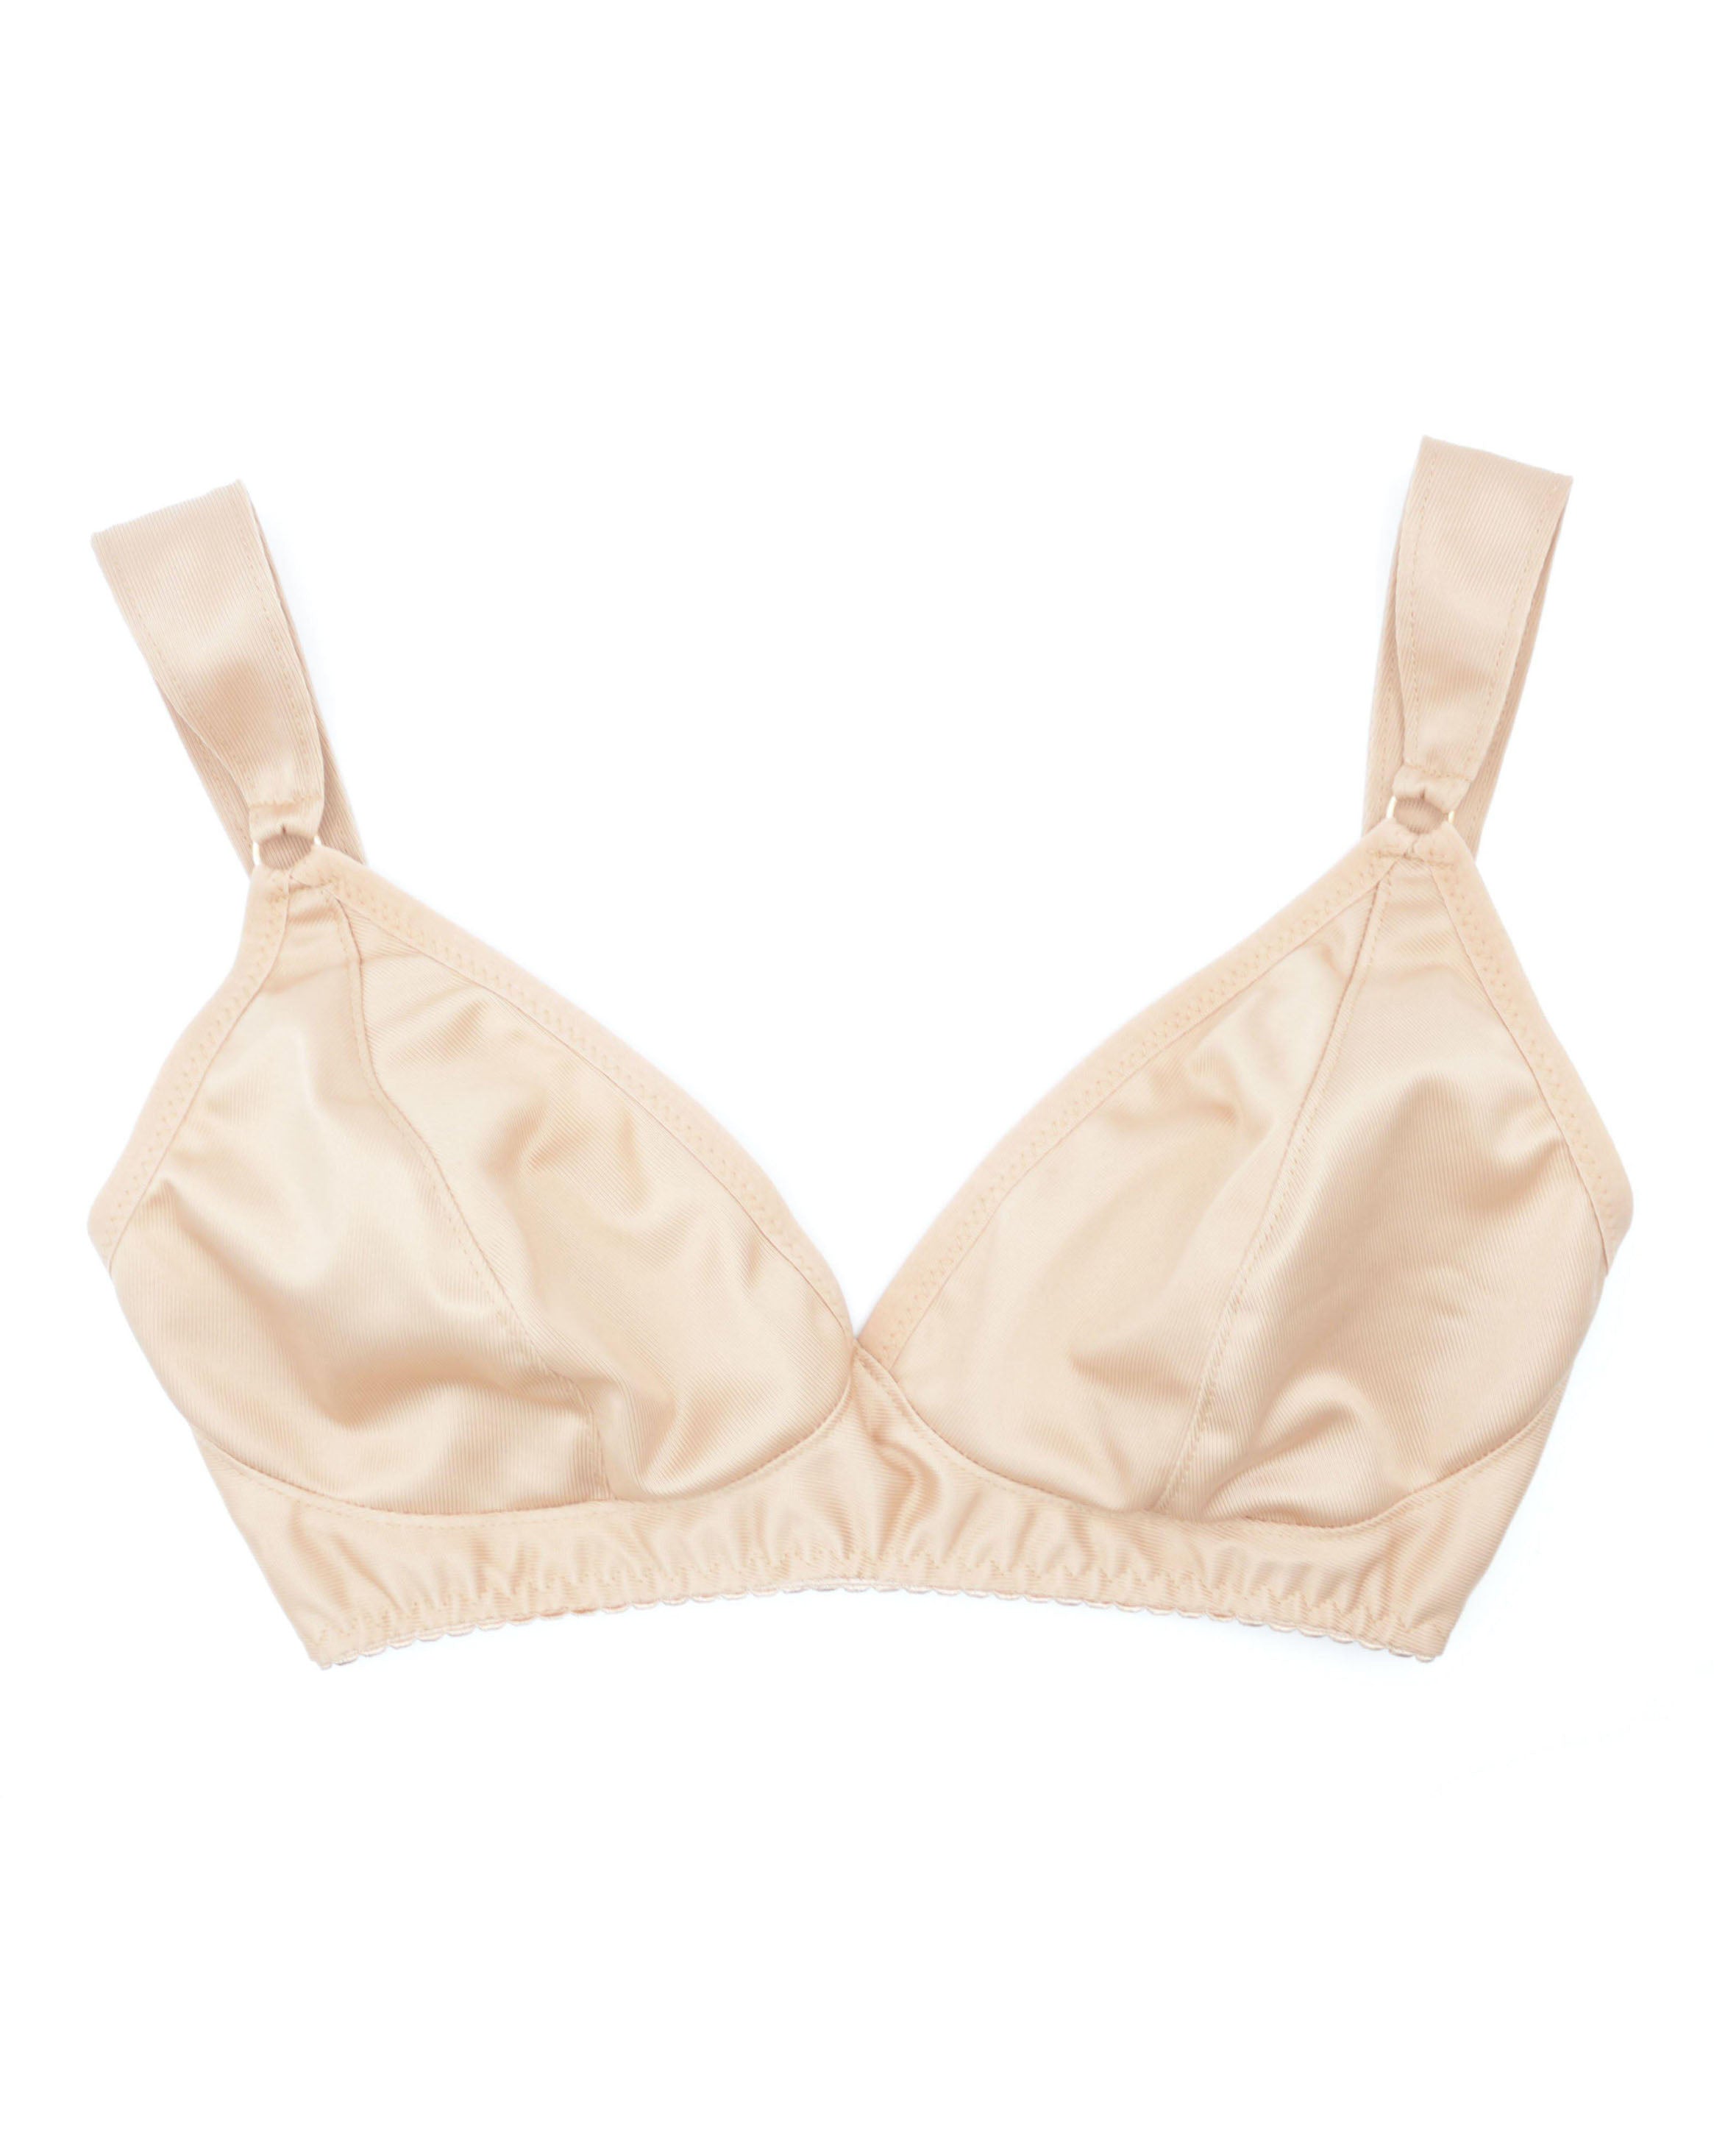 Buy online White Solid Bralette Bra from lingerie for Women by